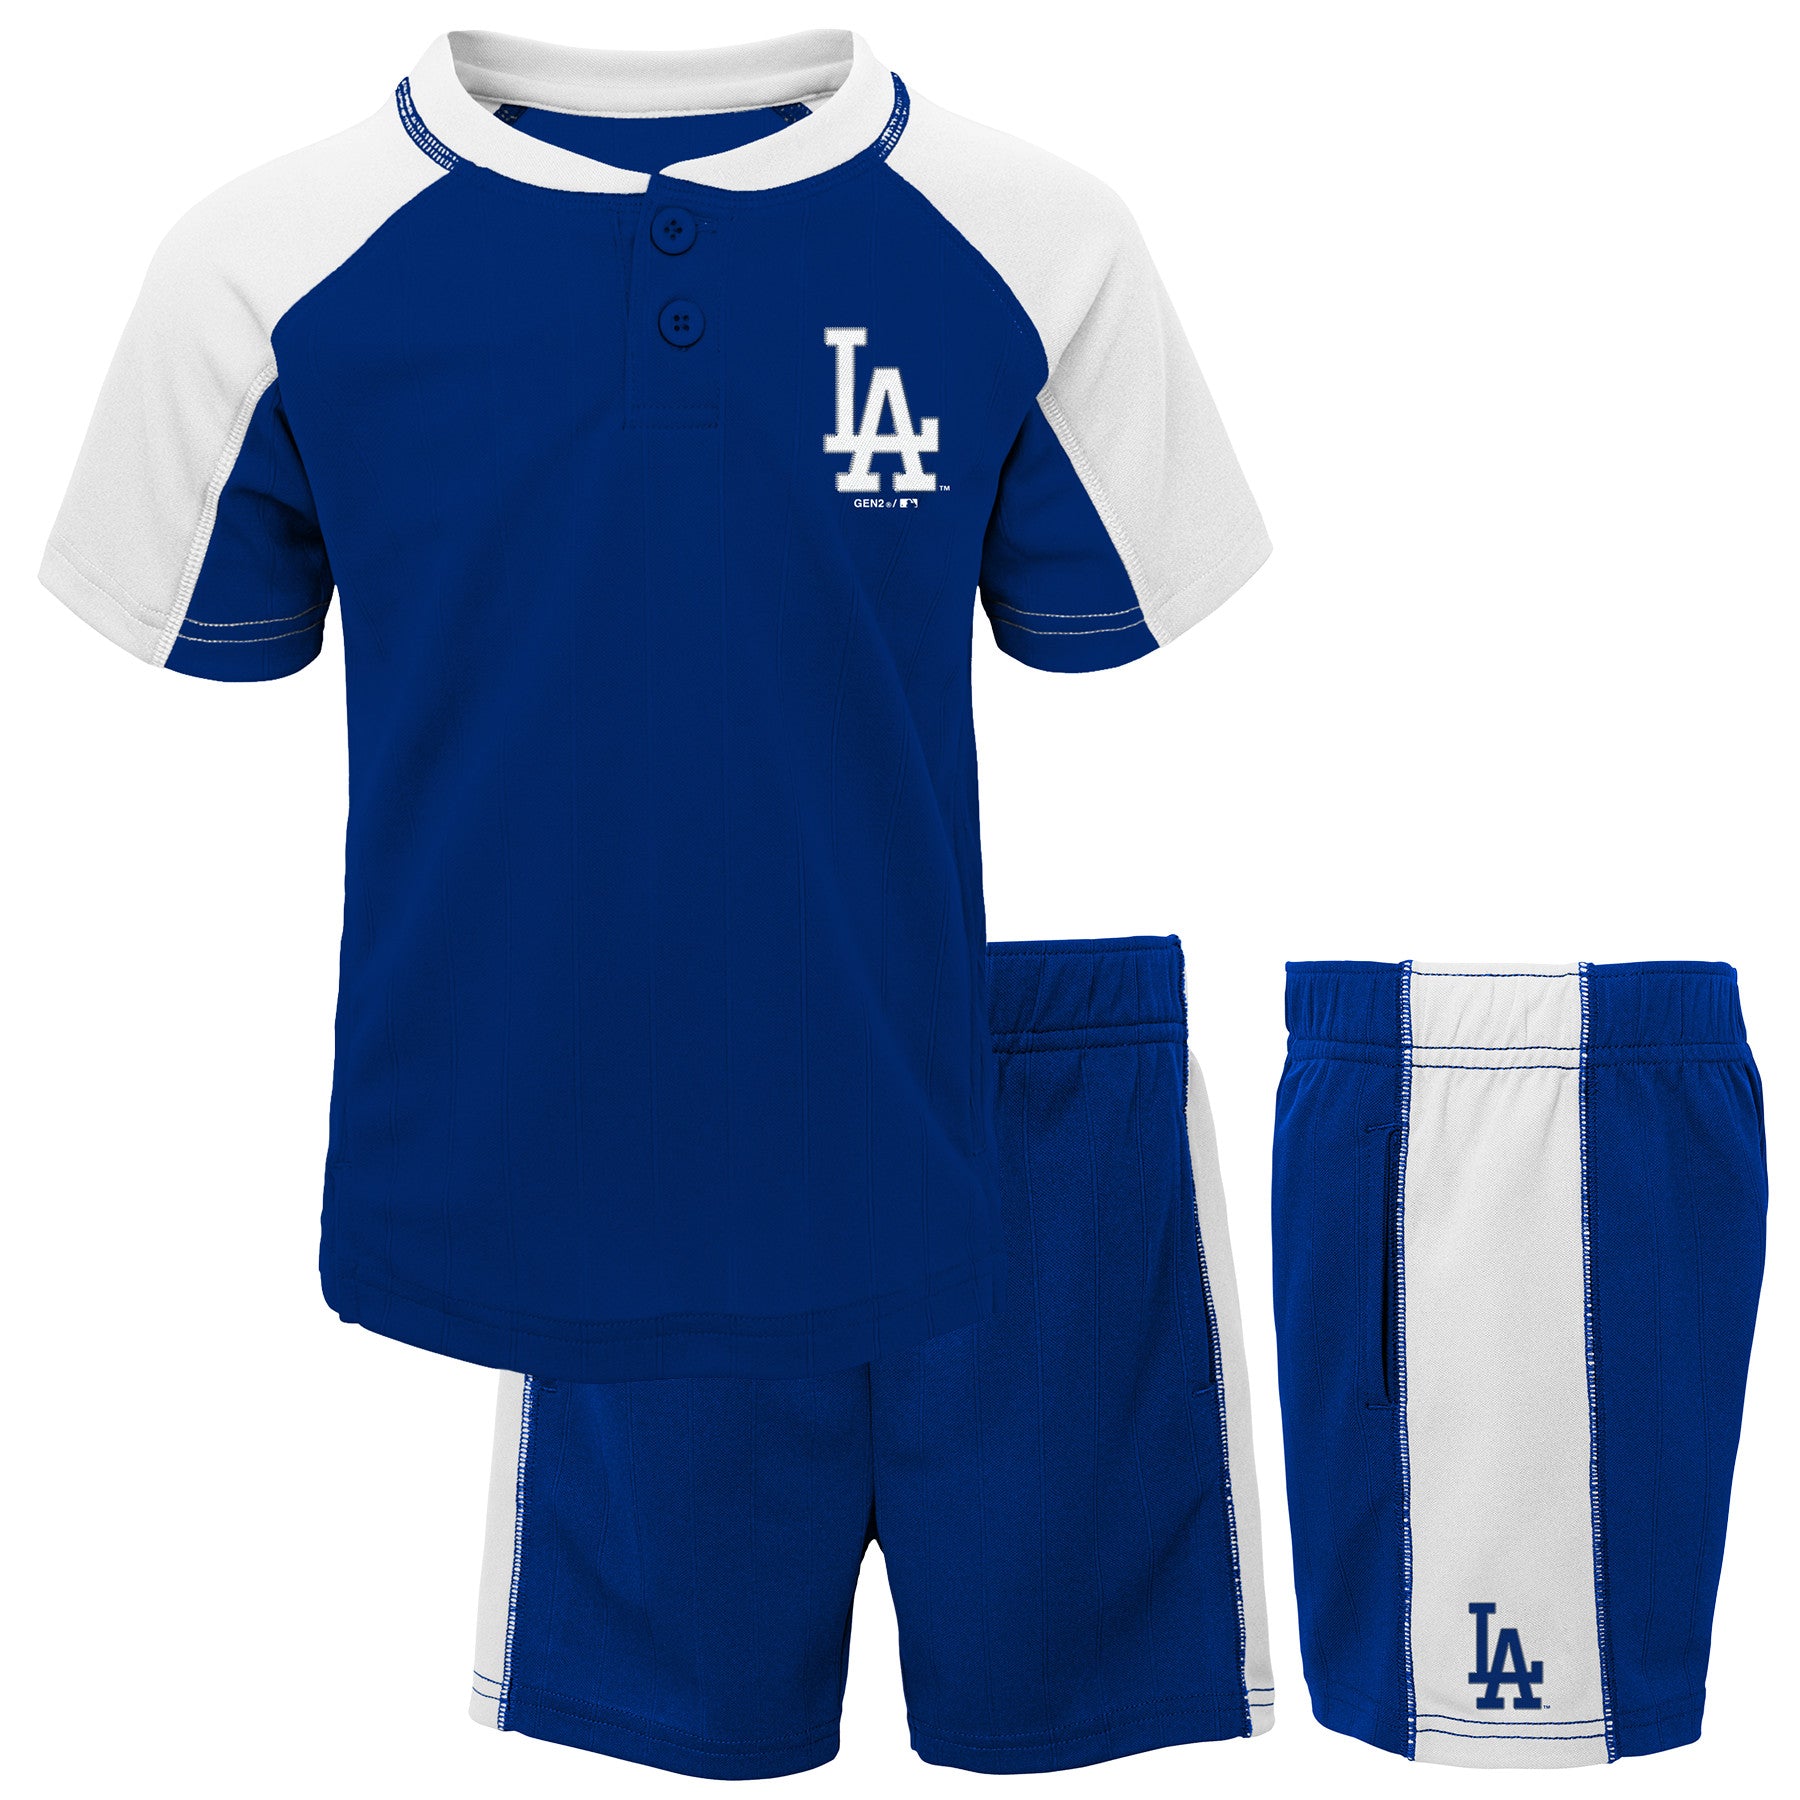 baseball jersey and shorts